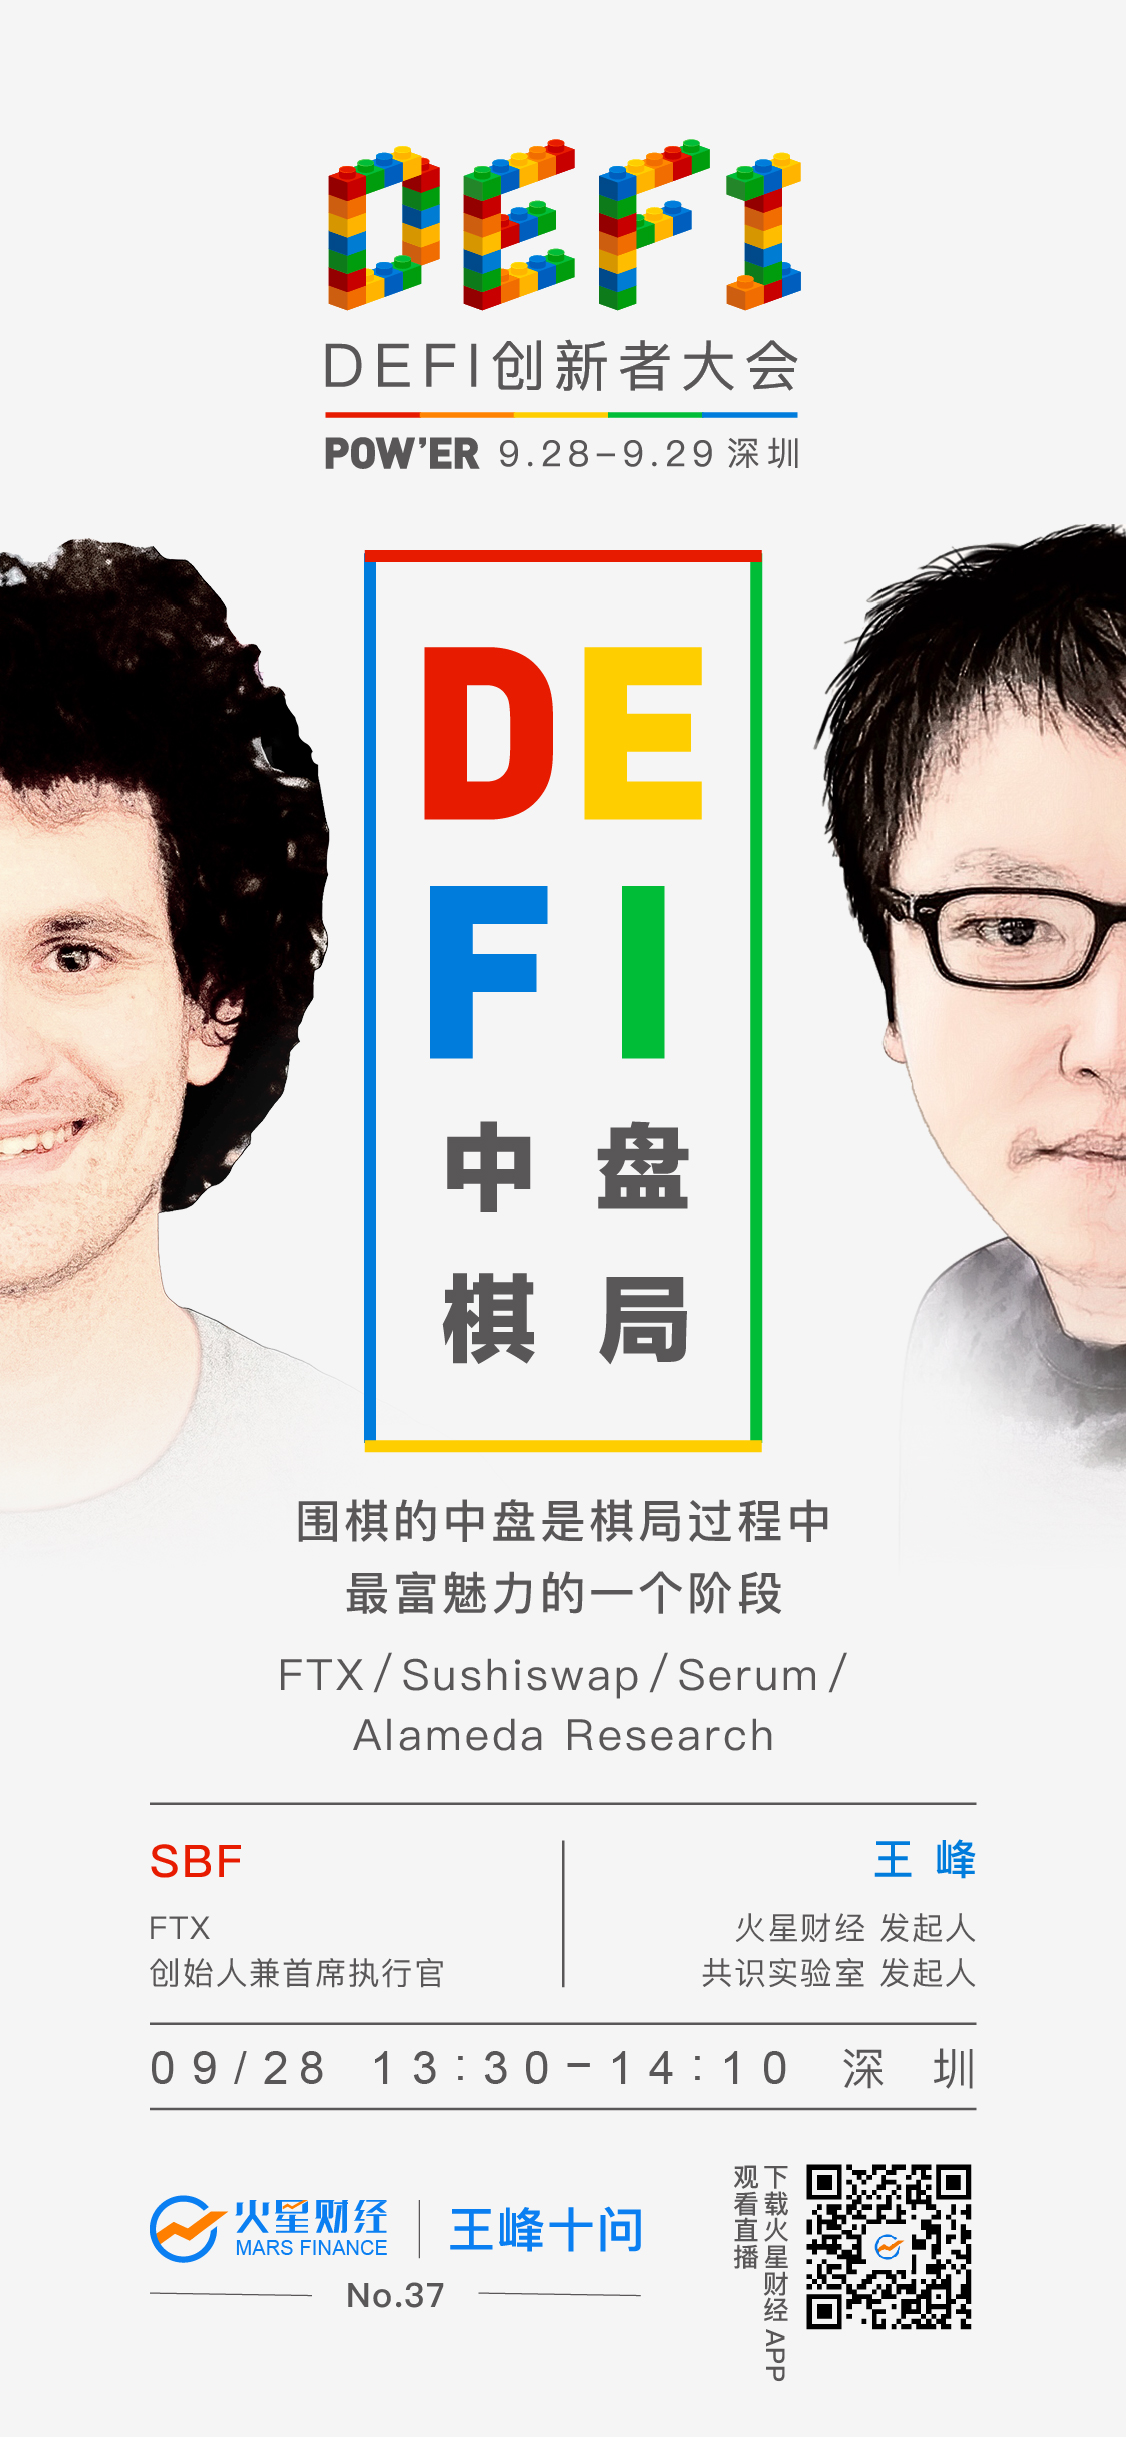 FTX创始人SBF确认出席DeFi创新者大会，王峰十问「DEFI中盘棋局」9月28日登陆深圳